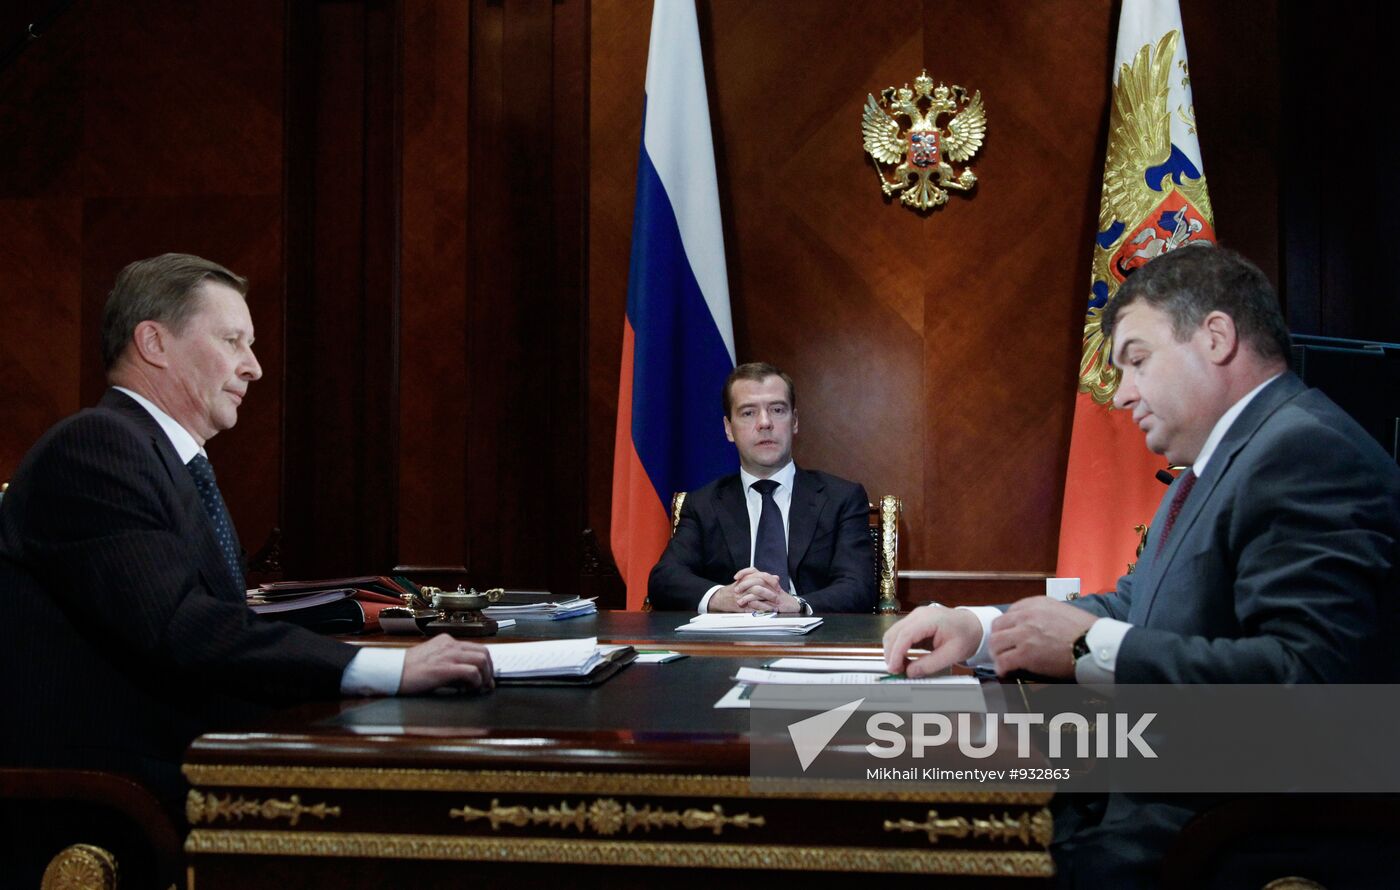 Dmitry Medvedev meets with Sergei Ivanov and Anatoly Serdyukov